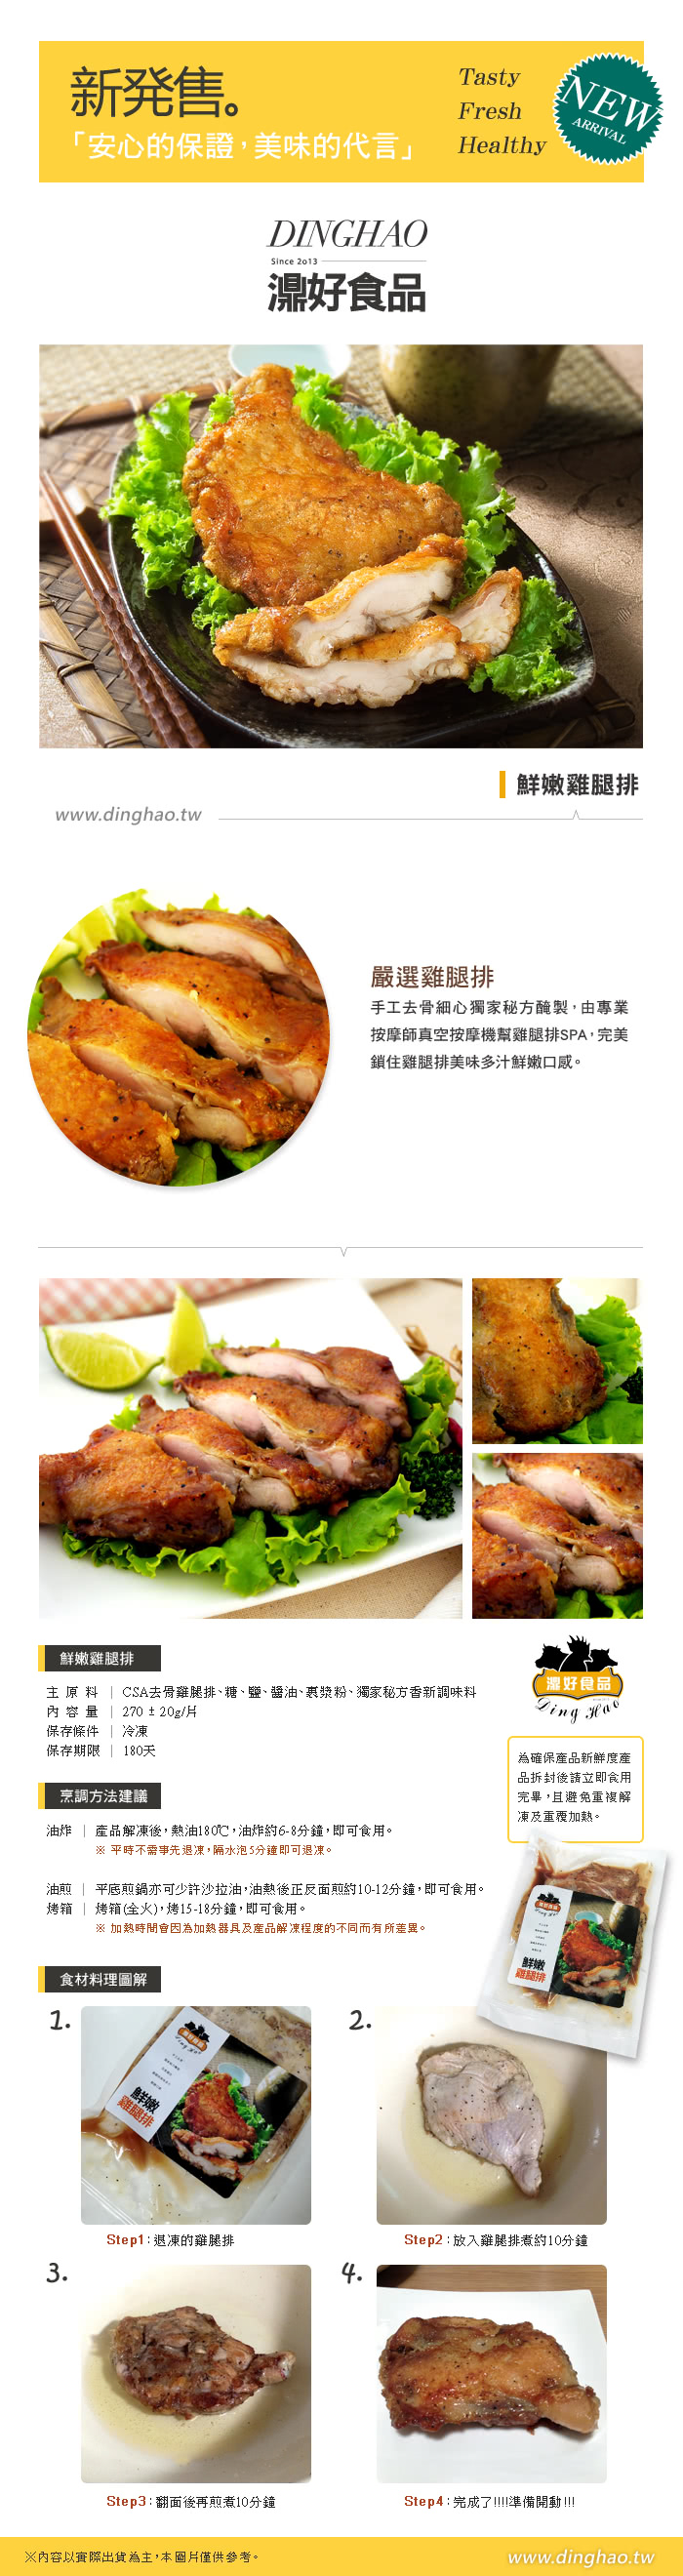 【濎好食品】鮮嫩雞腿排9包組(270g/包)